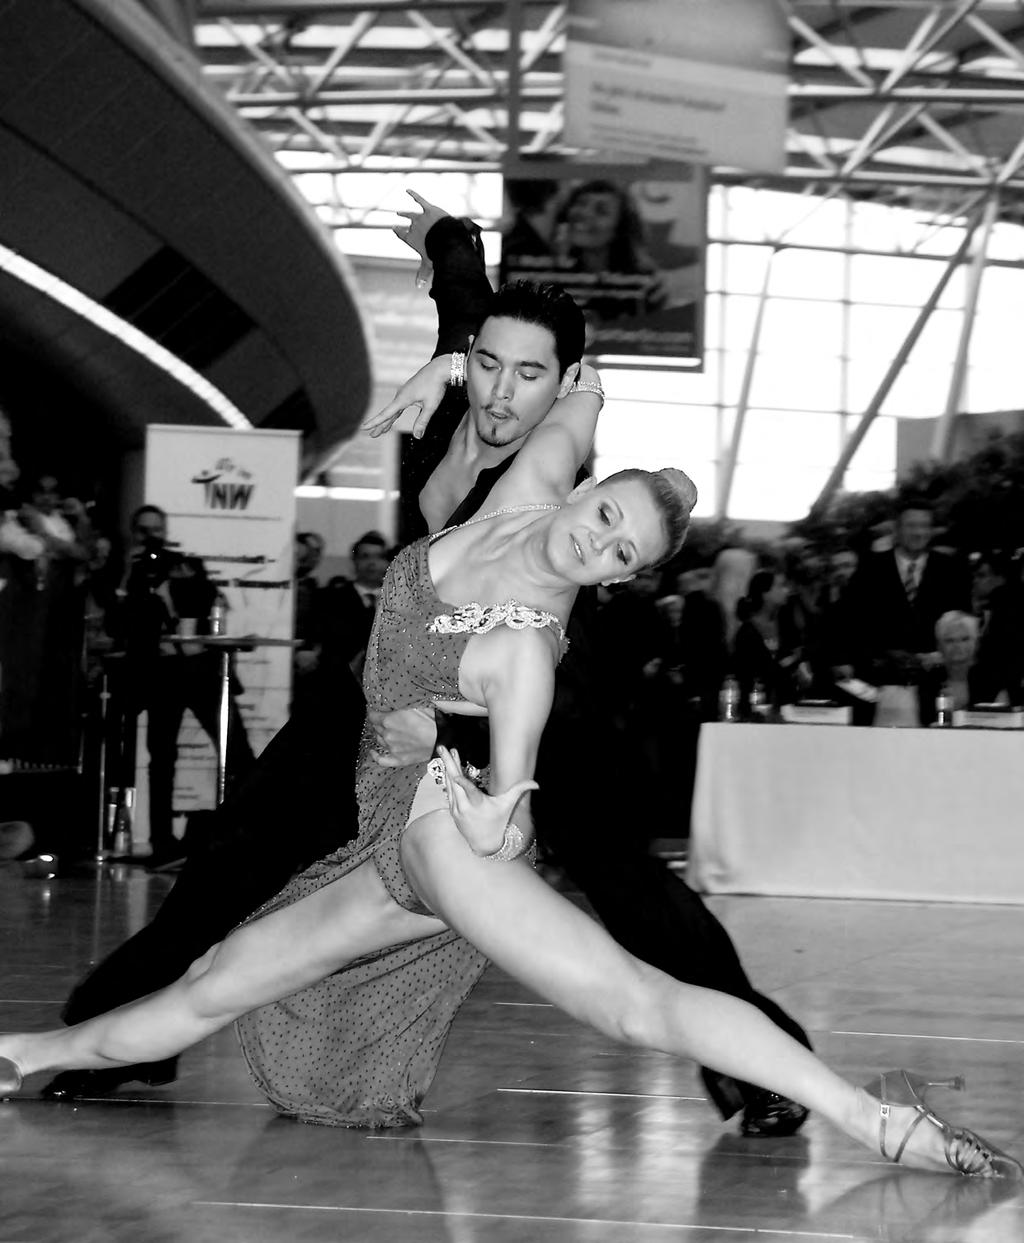 8 2012 www.tnw.de Das Infomagazin des Tanzsportverbandes Nordrhein-Westfalen Tanz, Terminal, Tanz! Shows und Attraktionen am Düsseldorfer Flughafen Titelthema Tanz, Terminal, Tanz!